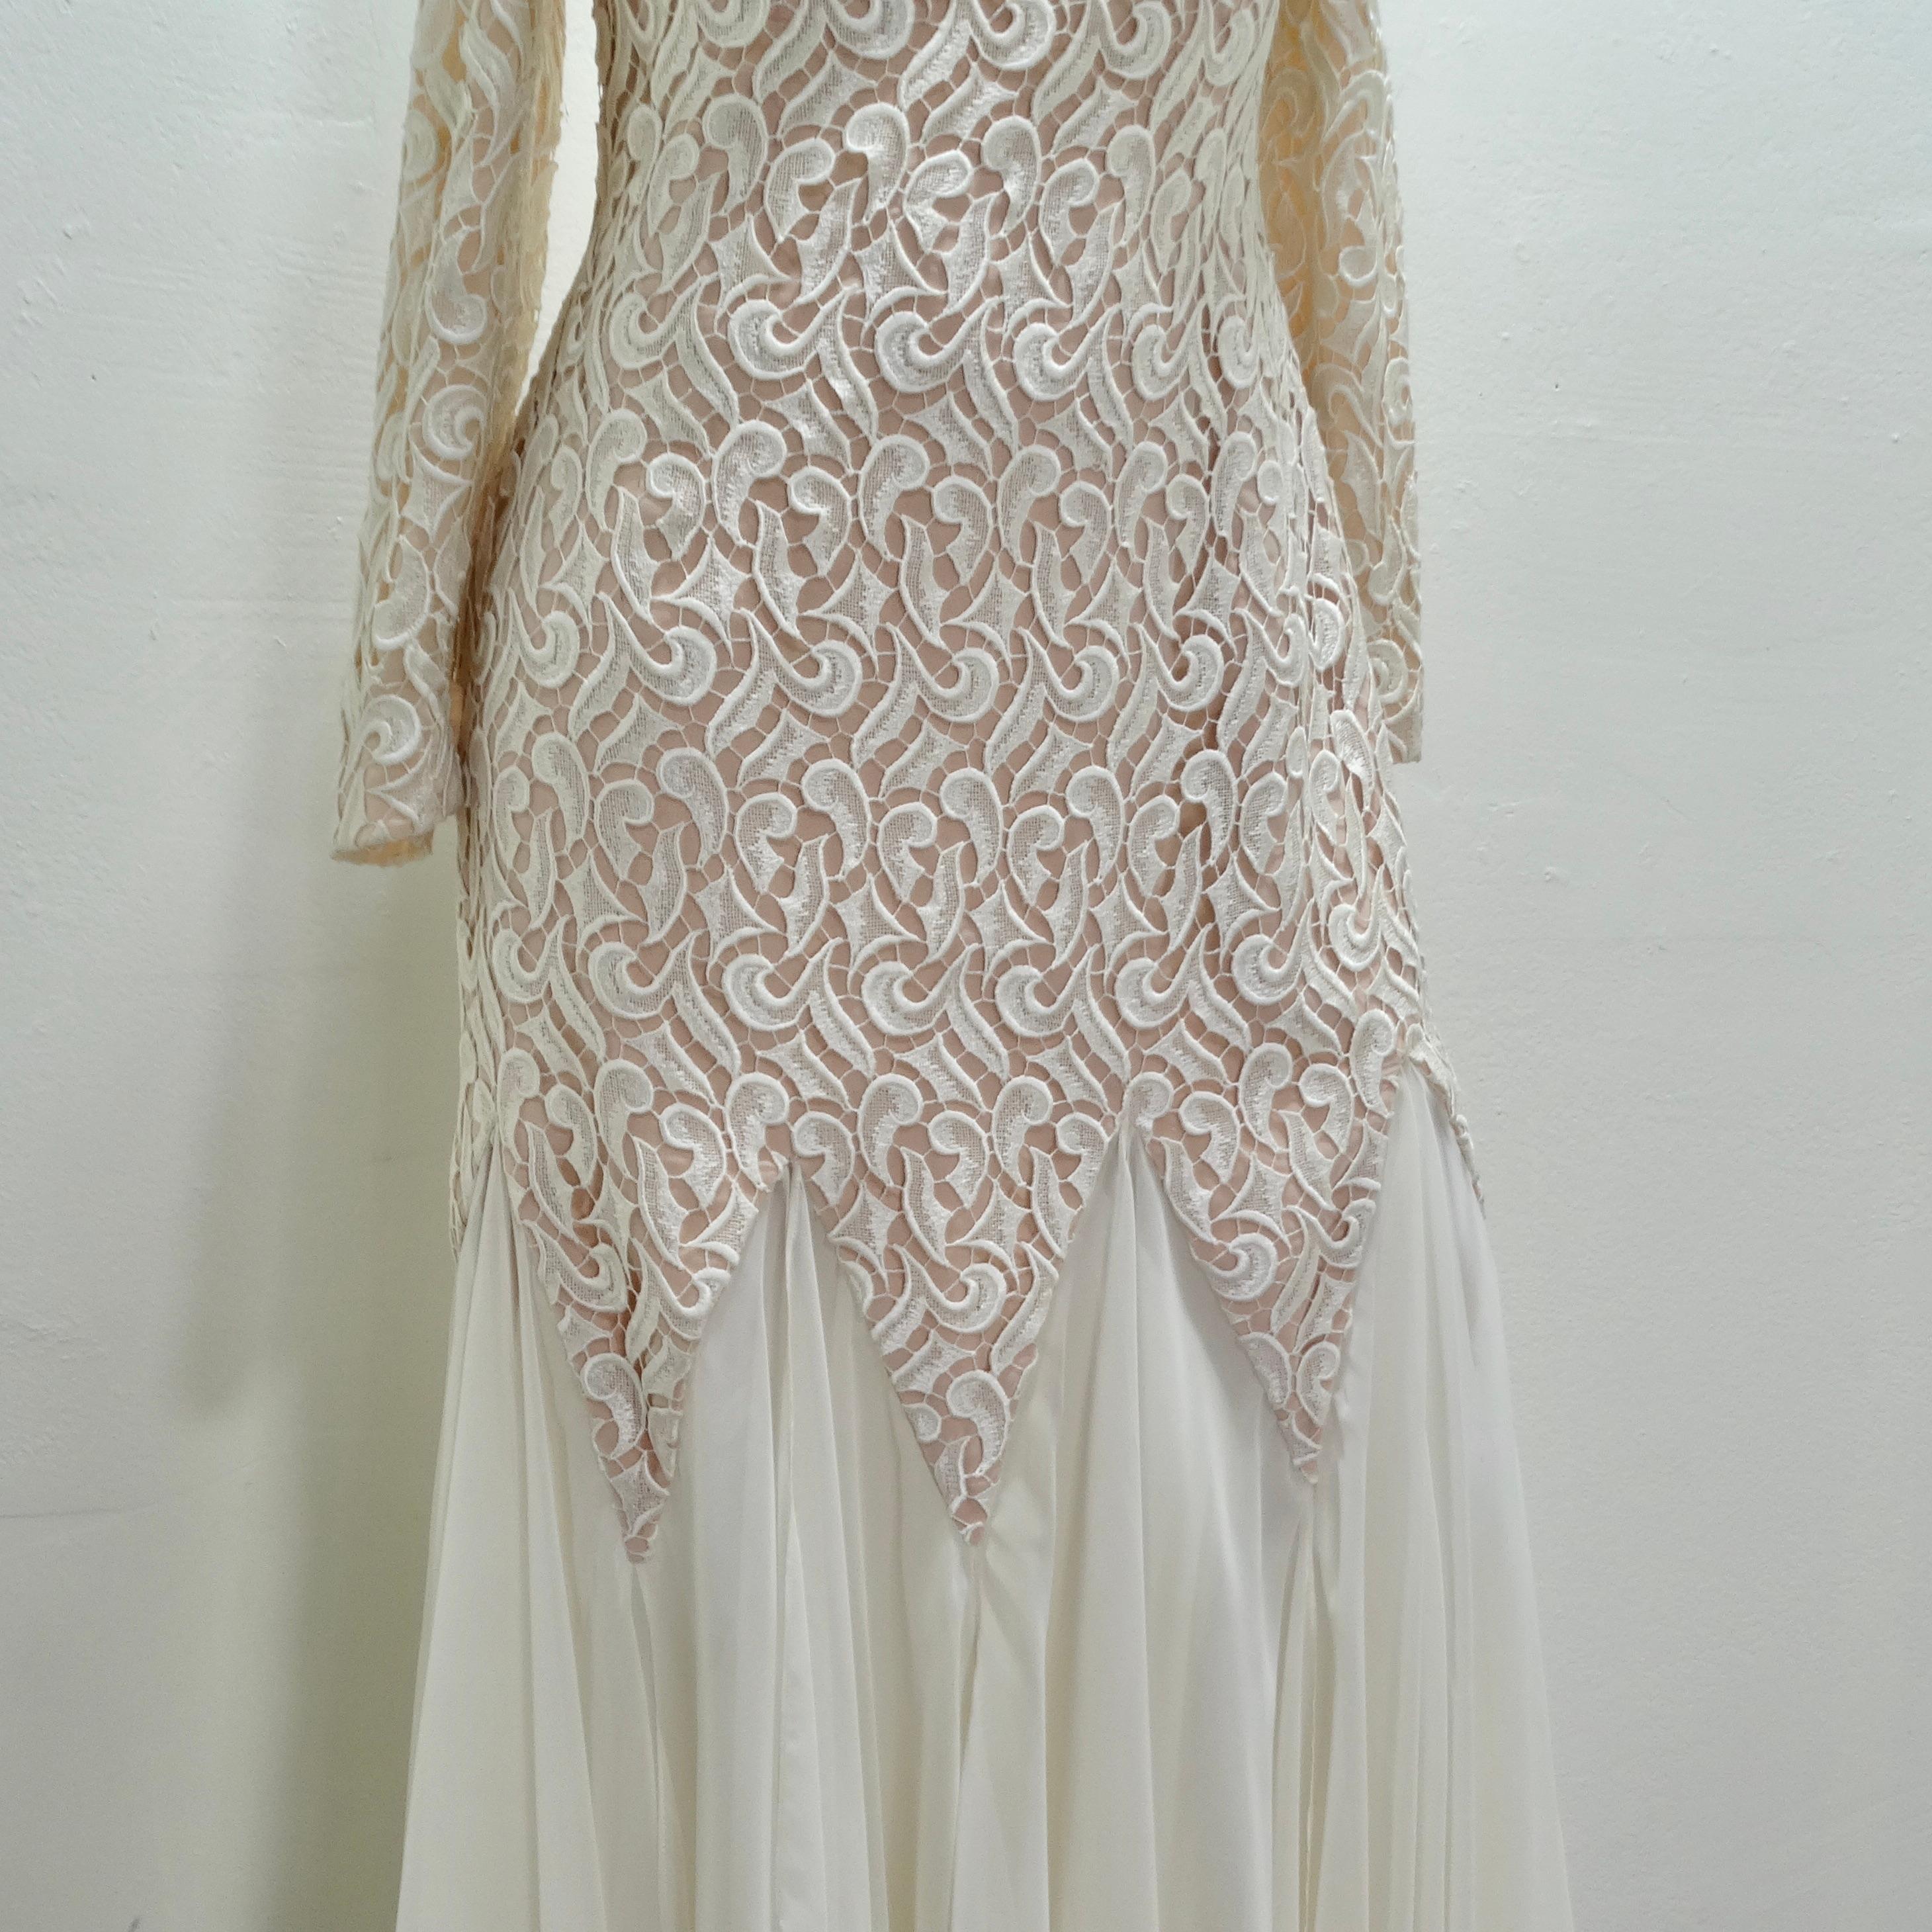 Das I Magnin Travilla 1980s White Lace Mermaid Bridal Dress - ein wahres Meisterwerk der Brautmode, das die Essenz zeitloser Eleganz mit einem modernen Twist einfängt. Mit diesem atemberaubenden, bodenlangen Kleid im Meerjungfrauen-Stil werden Sie